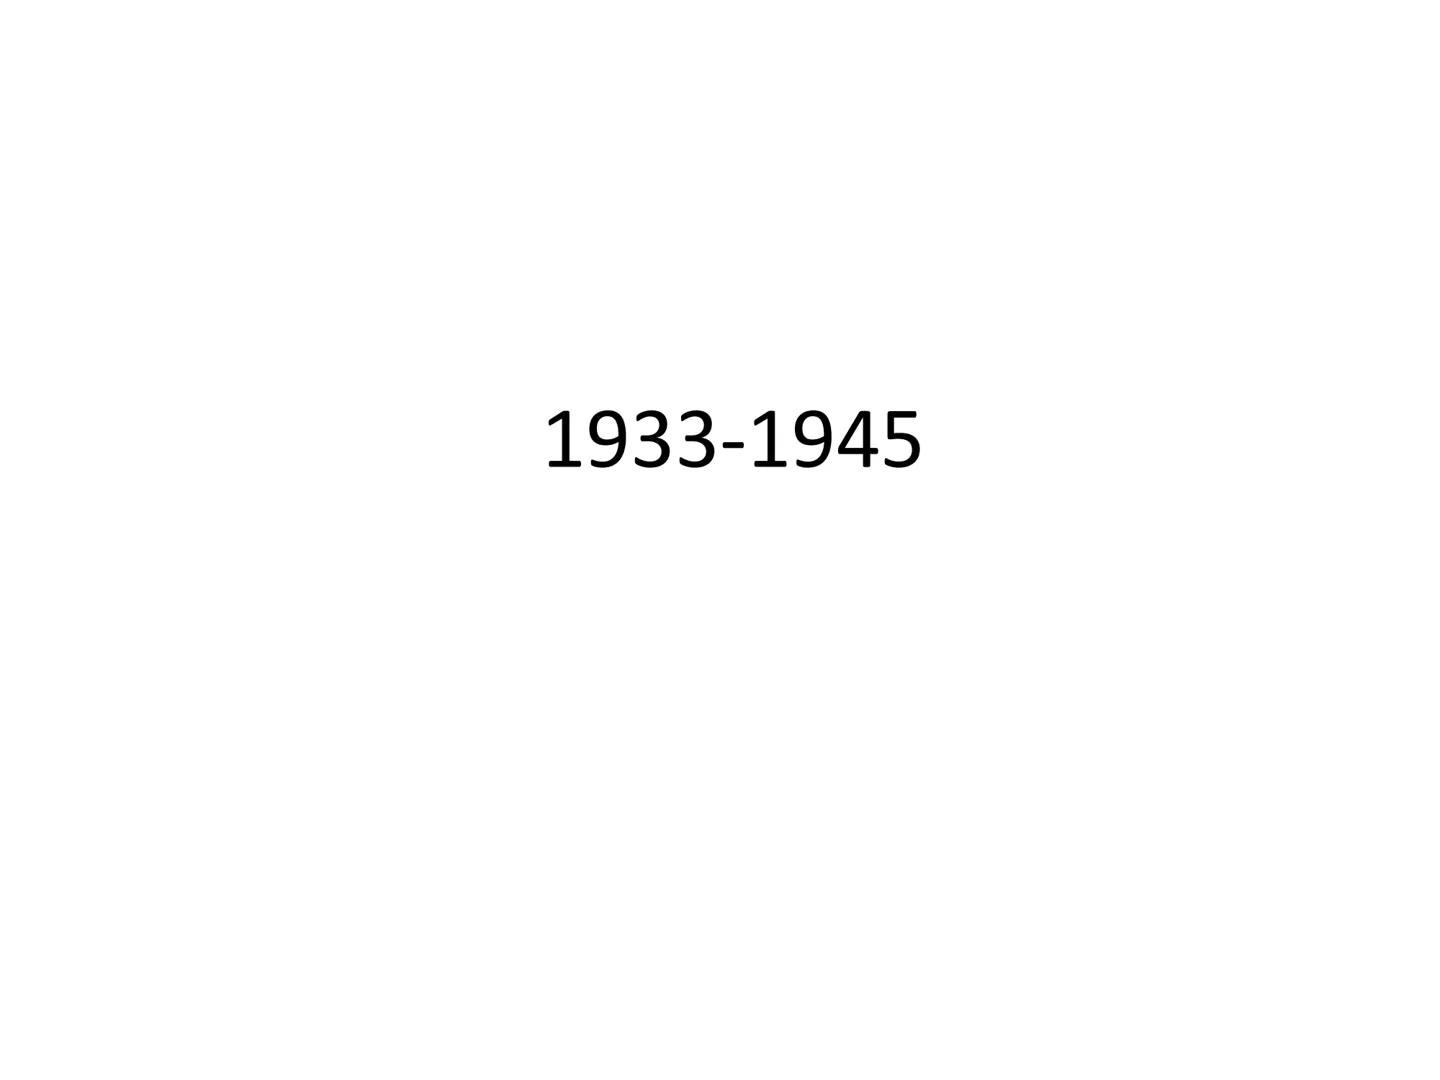 Histoire
Dates repères 1ère Série
/29 1914-1918 Grande Guerre
(1ère Guerre Mondiale) 1916 Bataille de Verdun 1917 Révolution Russe 11 novemb